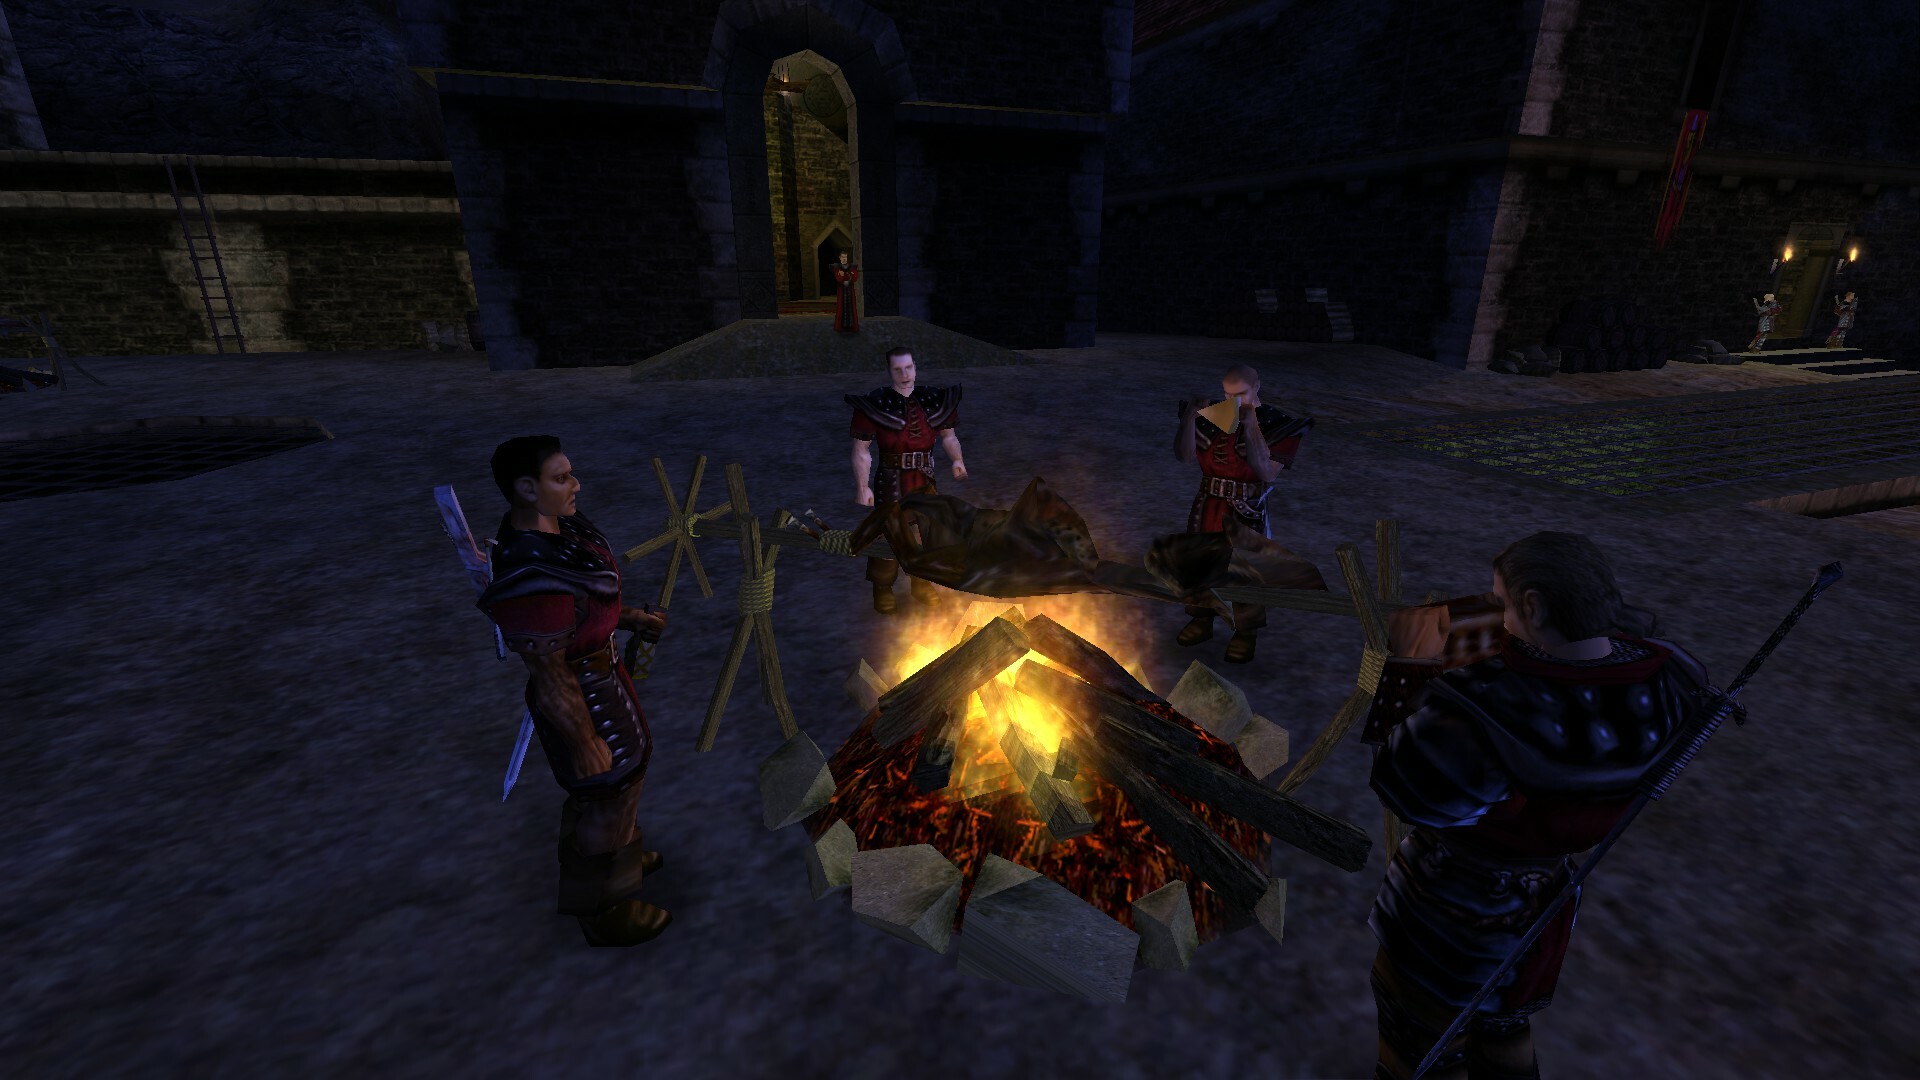 Postacie w średniowiecznych zbrojach odpoczywają przy ognisku w nocnej scenerii średniowiecznego zamku.